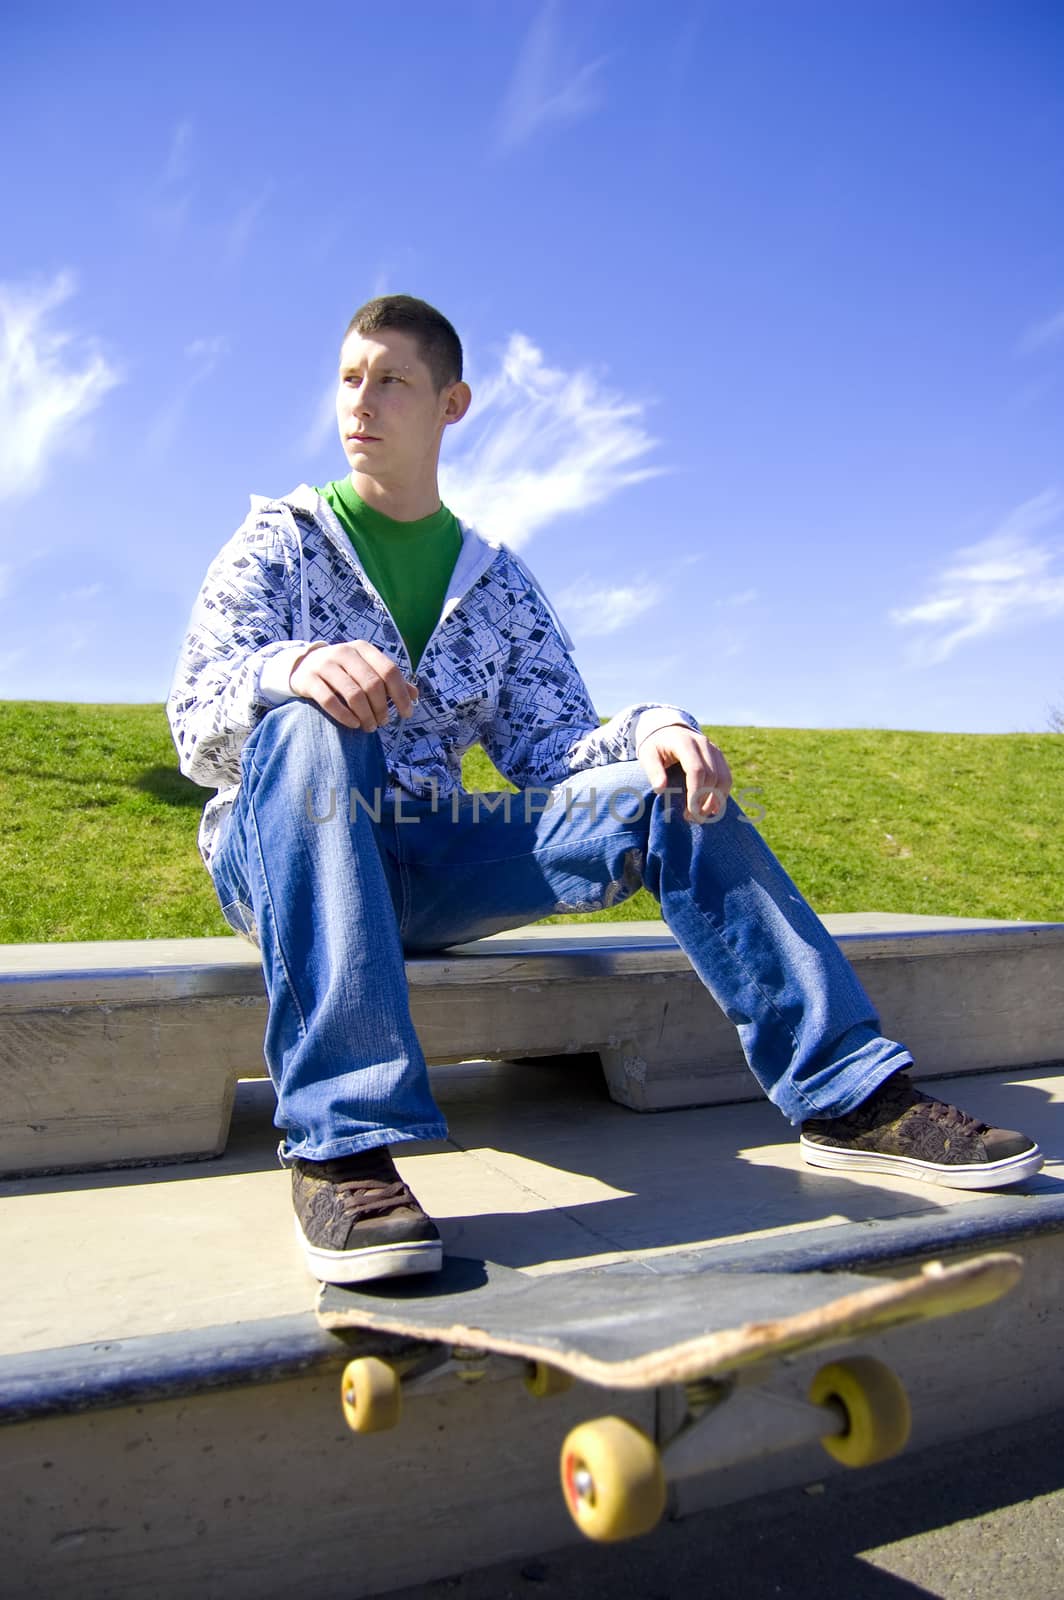 Skateboarder conceptual image. Teenage skateboarder sits in skatepark.